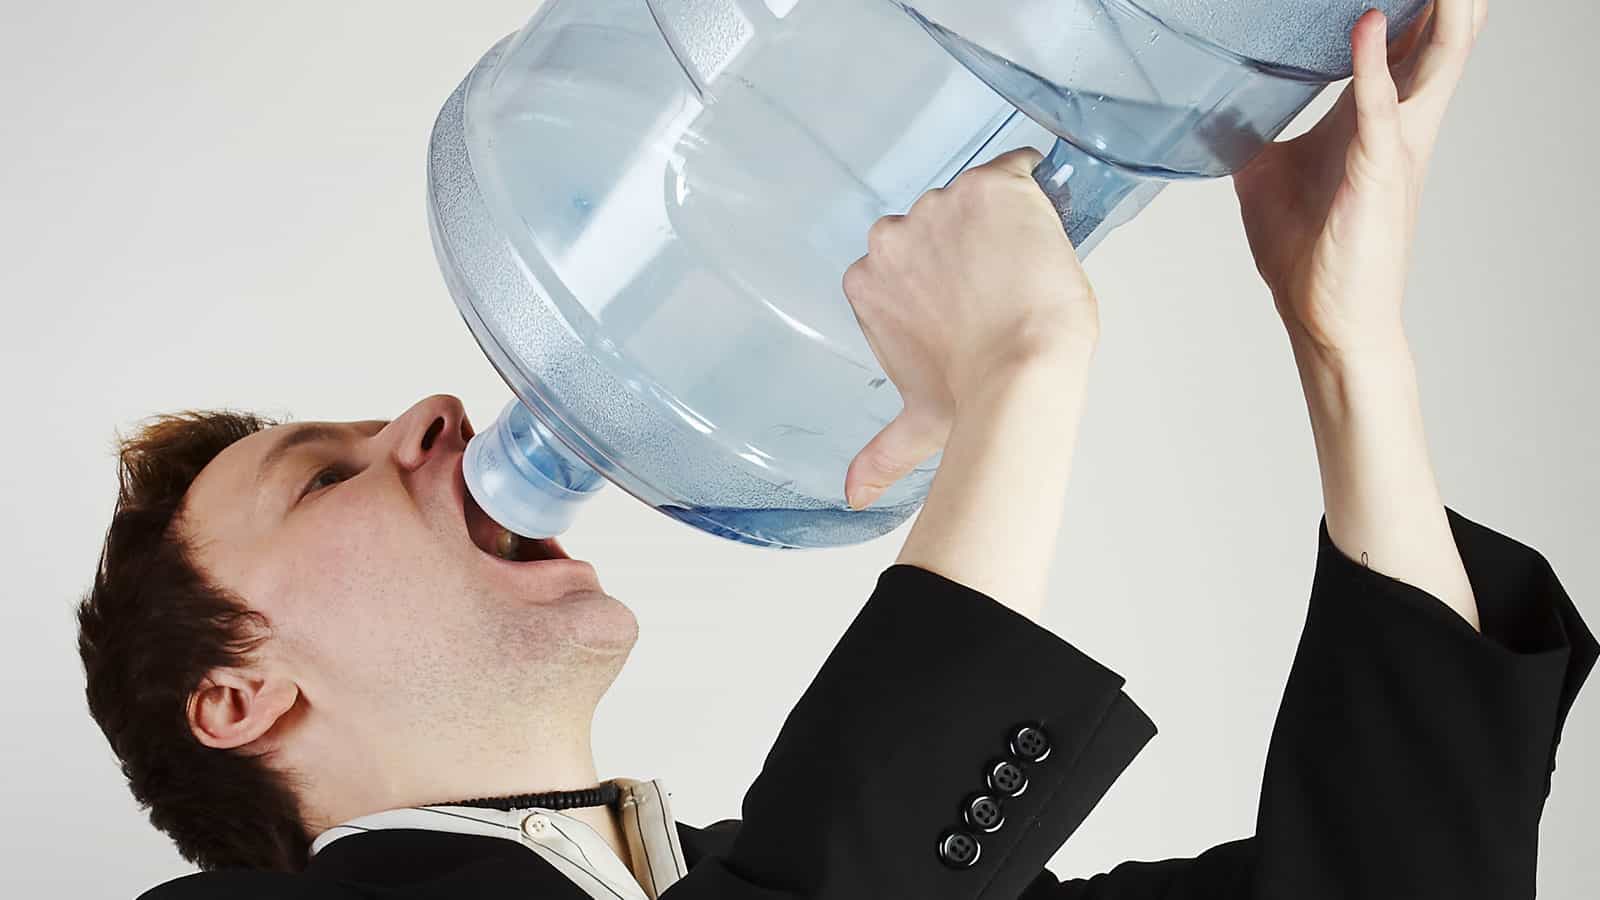 تحذير: شرب الماء بسرعة قد يسبب الوفاة